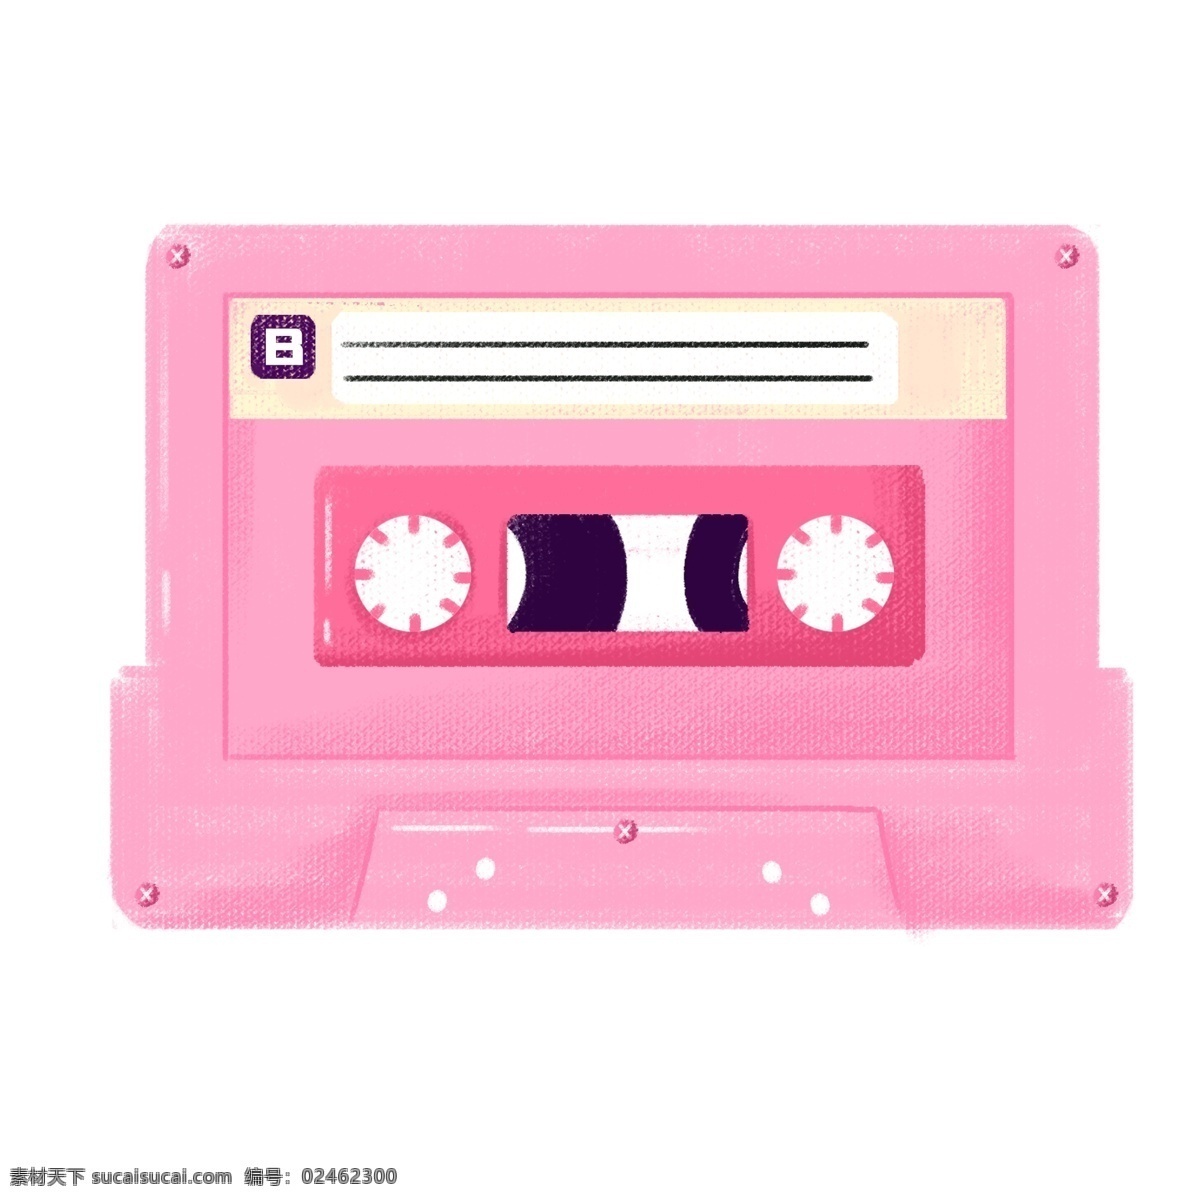 粉色 磁带 手绘 插画 粉色的磁带 储蓄音乐 存储歌曲 手绘磁带 卡通磁带 磁带插画 磁带装饰 漂亮的磁带